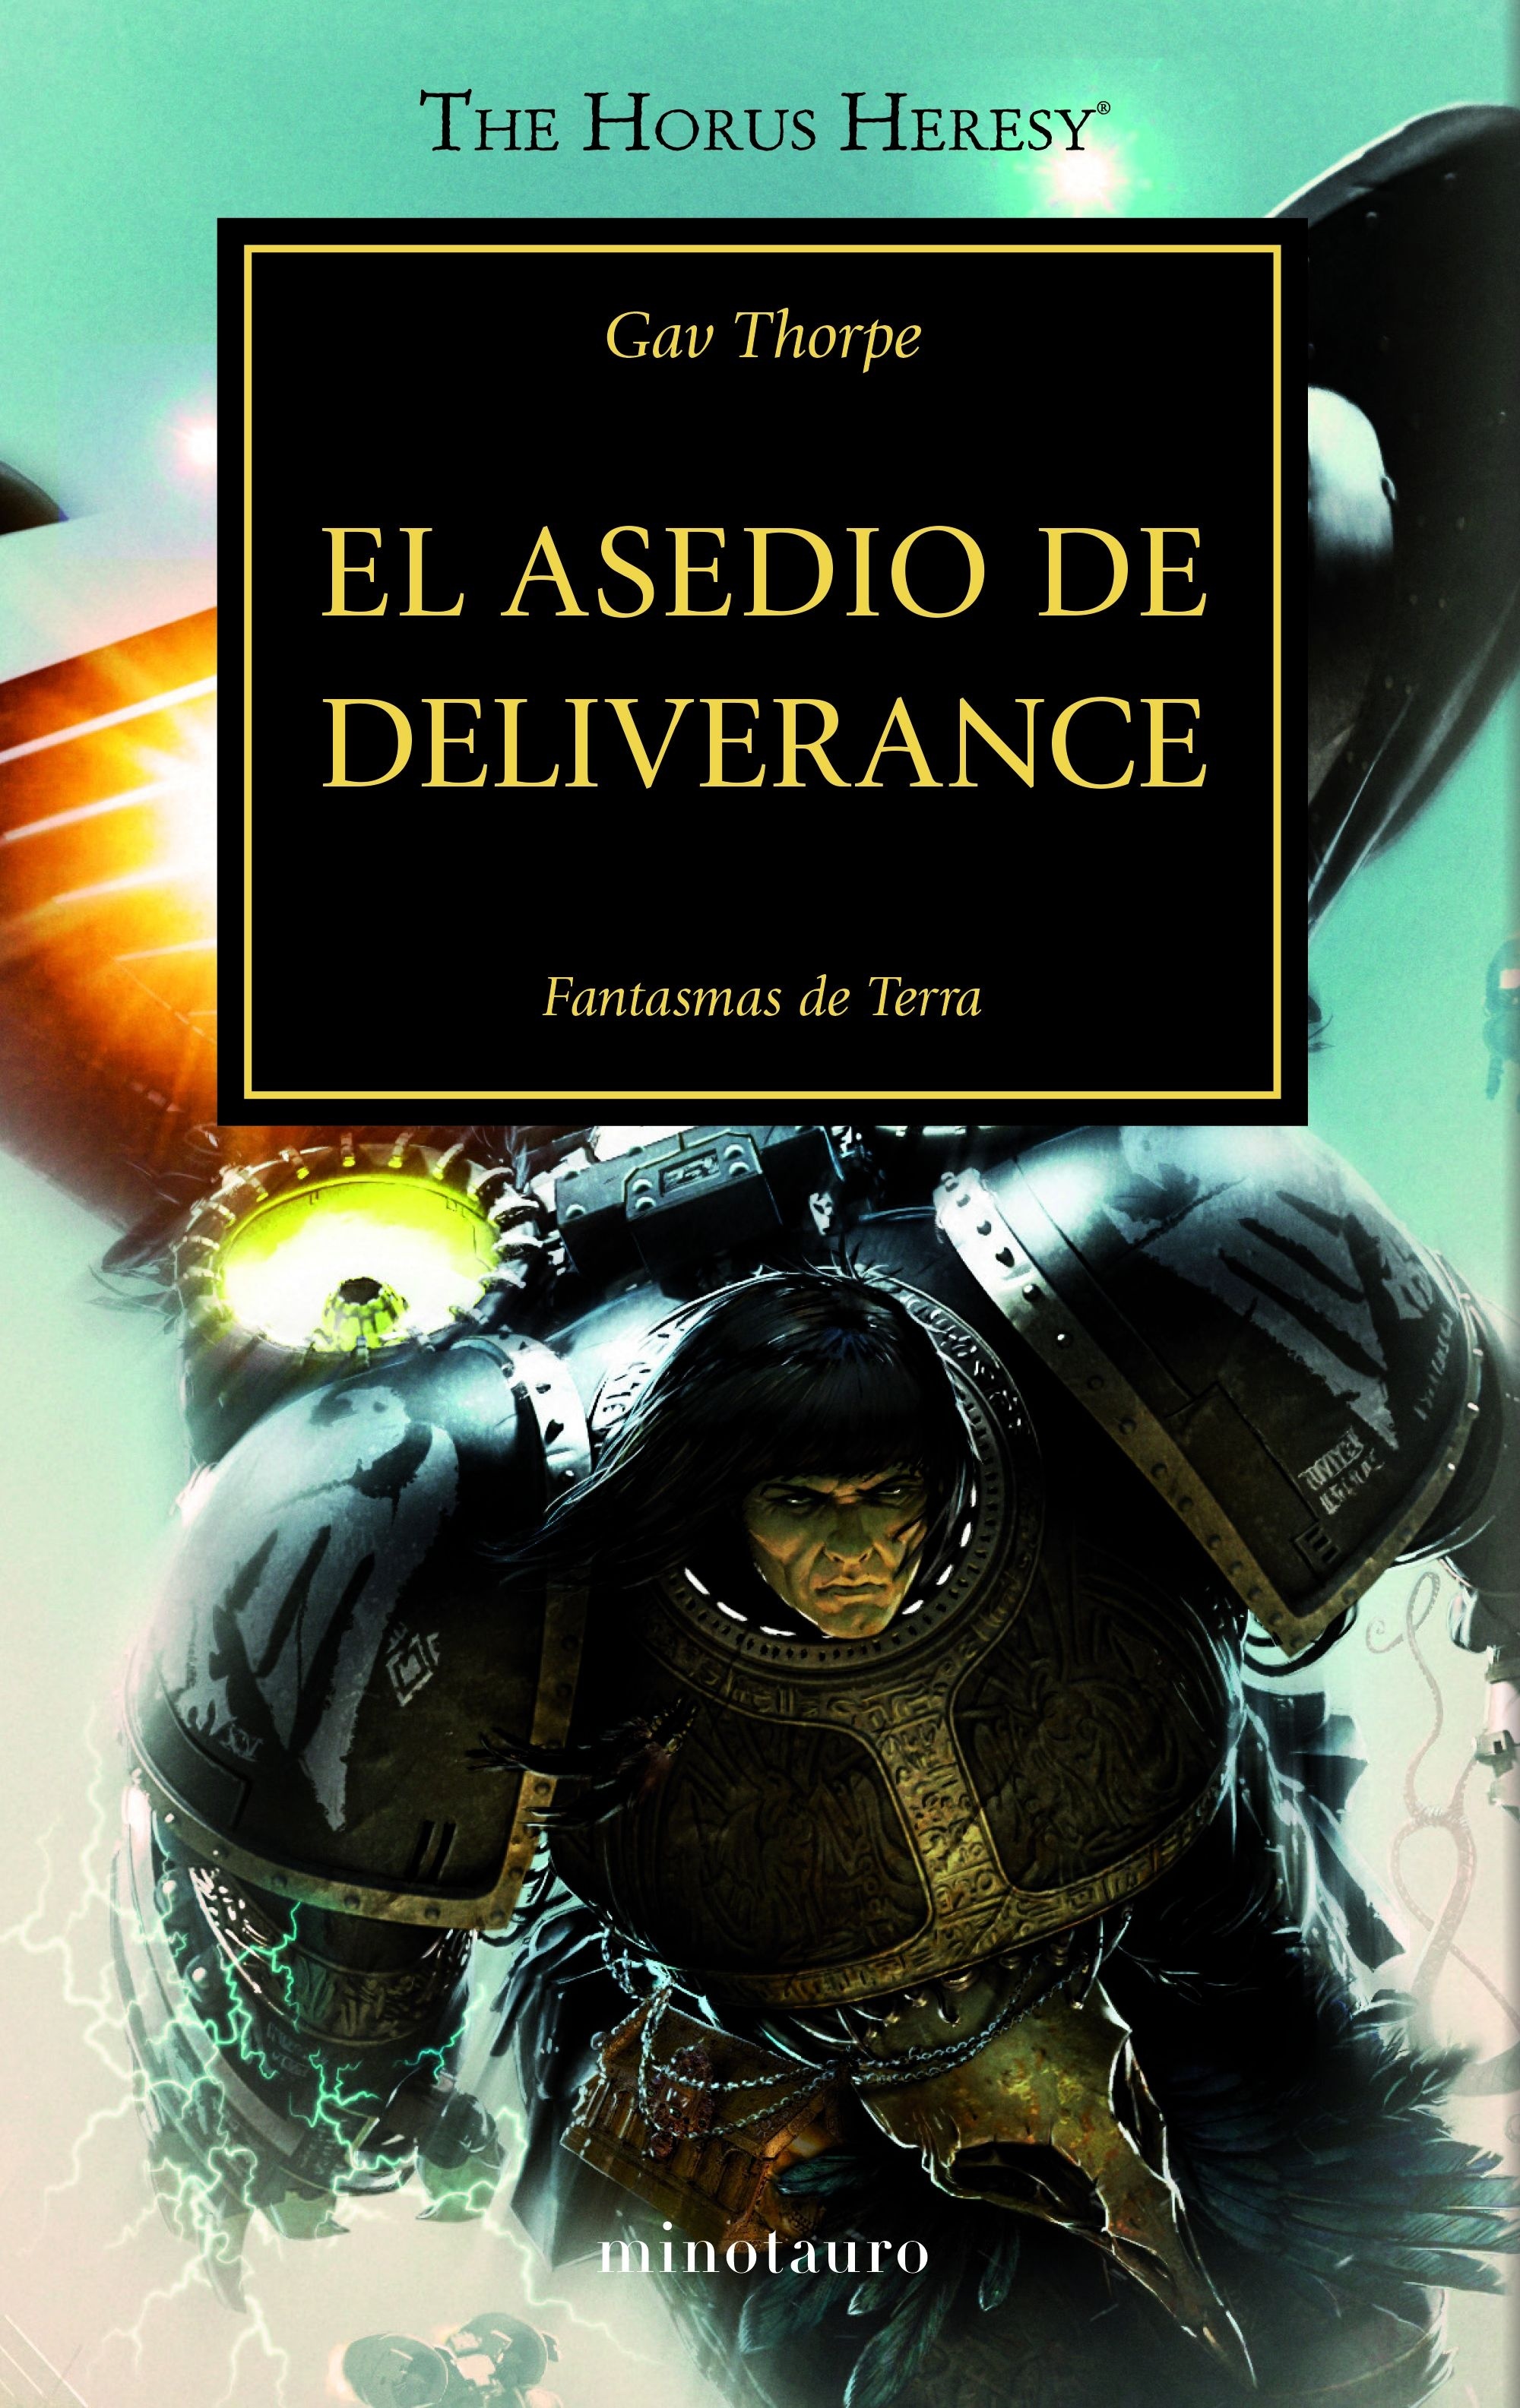 Asedio de Deliverance, El "La Herejía de Horus 18". La Herejía de Horus 18